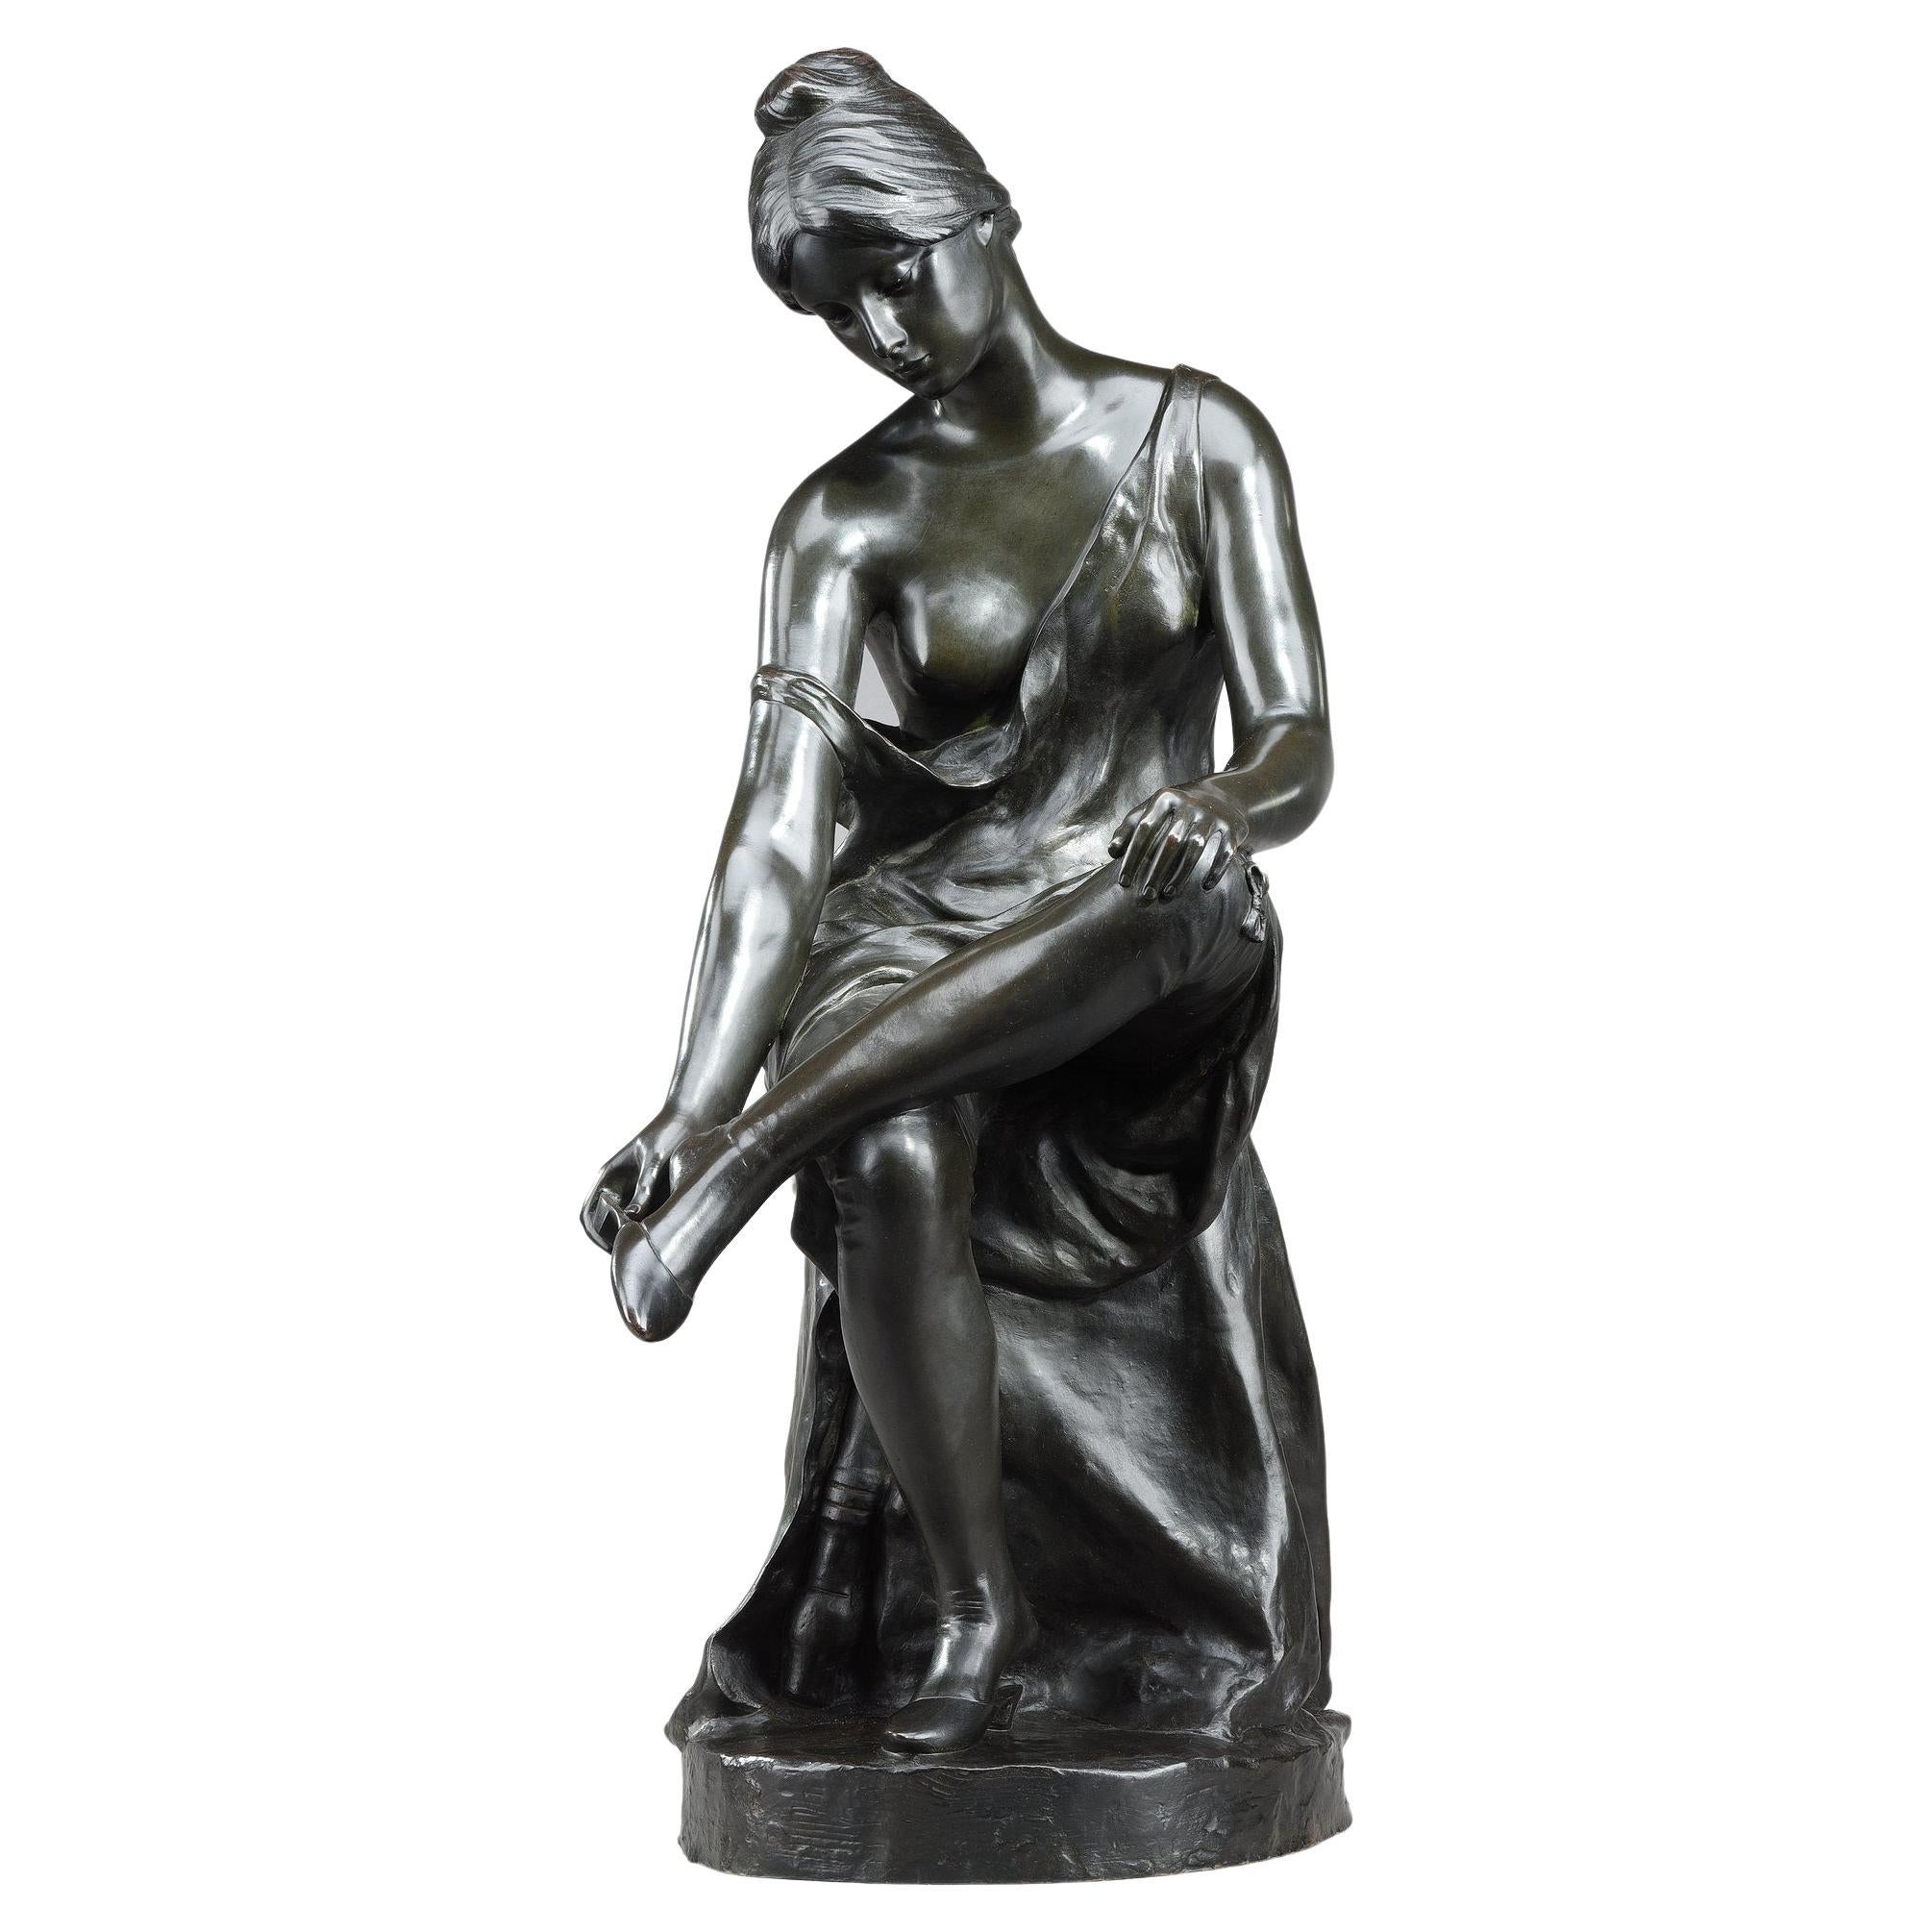 Patinated bronze sculpture, "Jeune femme se déchaussant", signed Malvina Brach